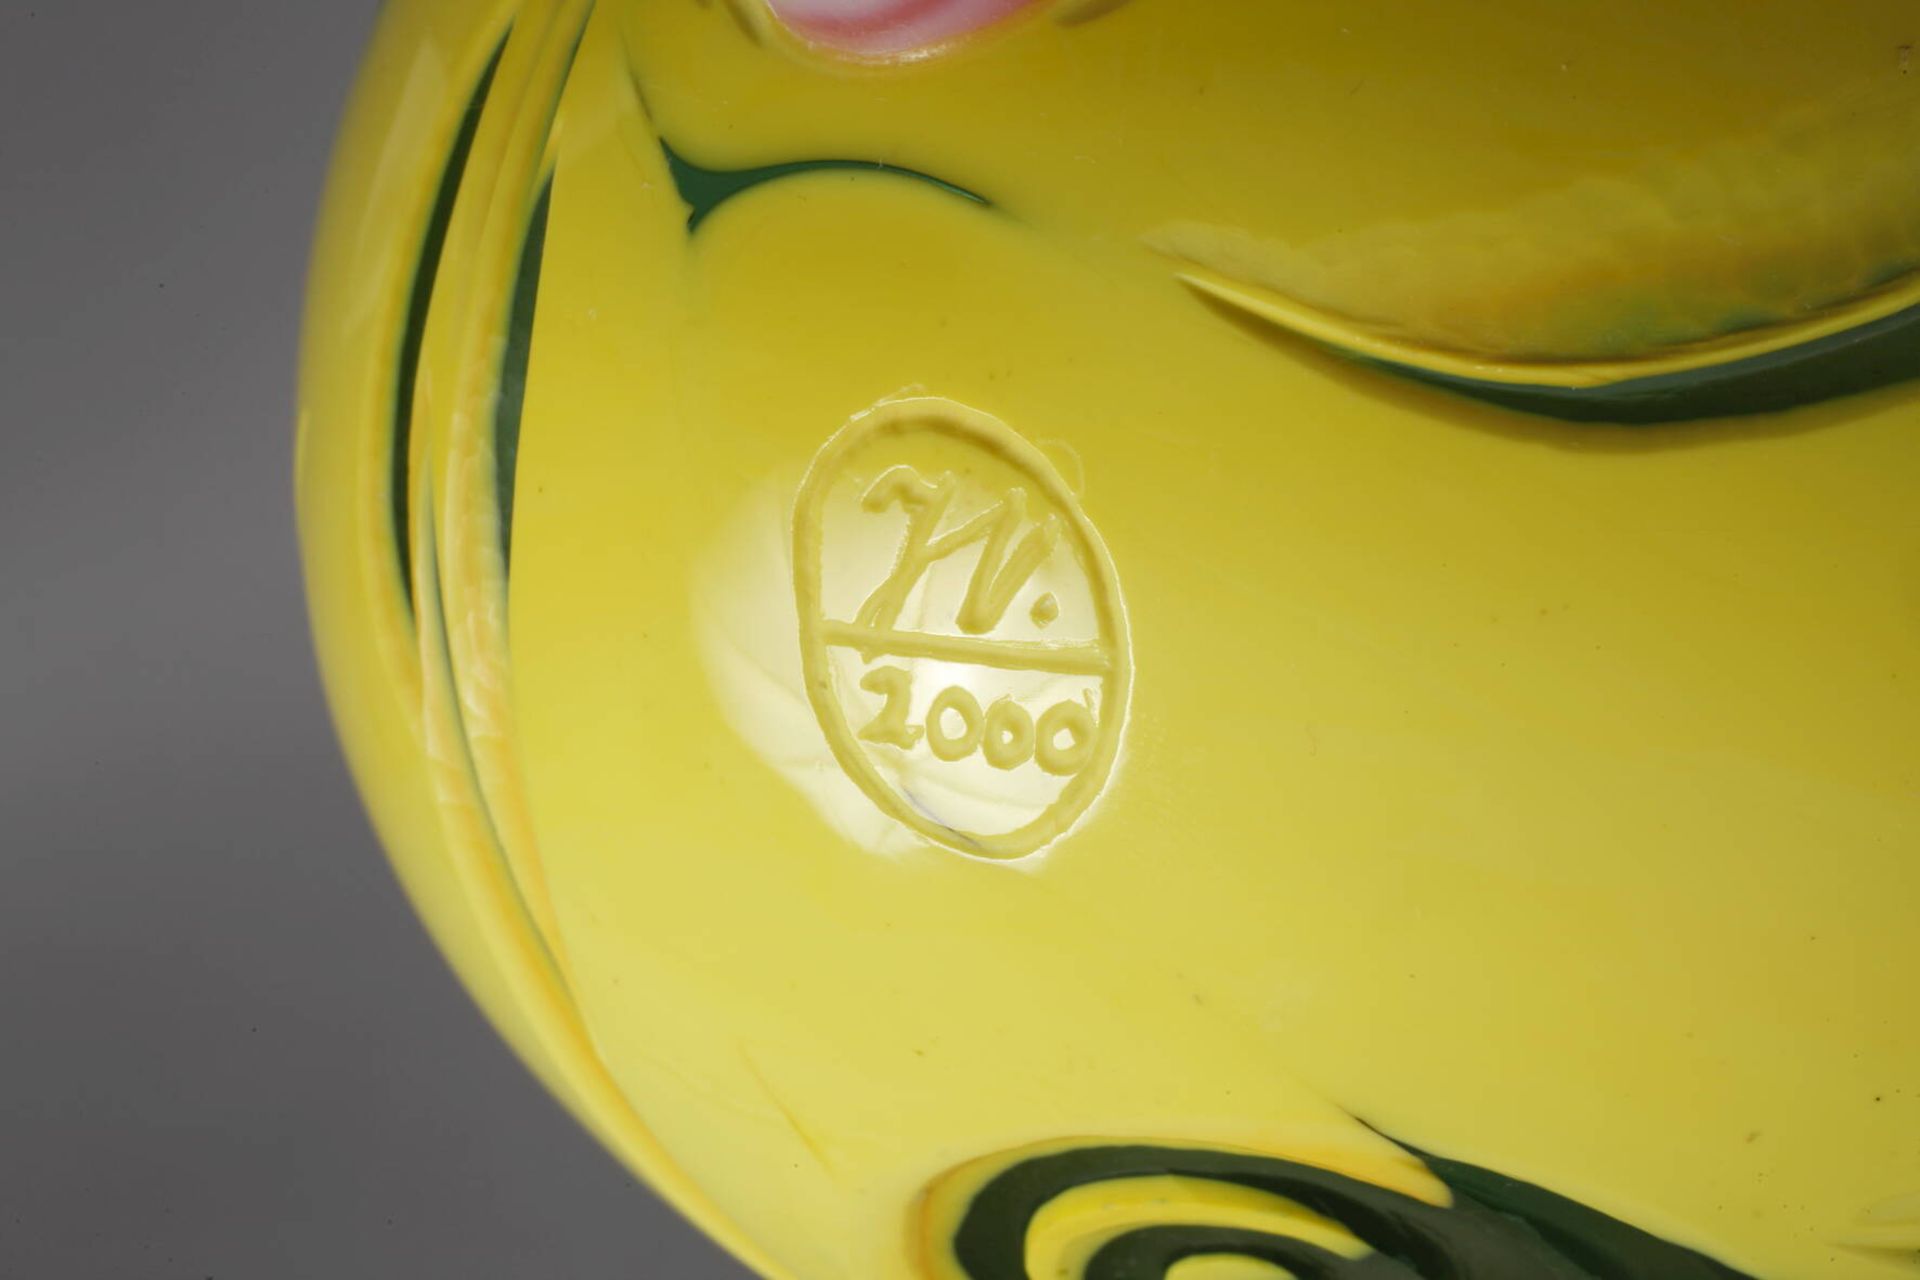 Vase Studioglasdatiert 2000, Herstellermonogramm JV., farbloses Glas, grün und gelb überfangen, - Bild 5 aus 5